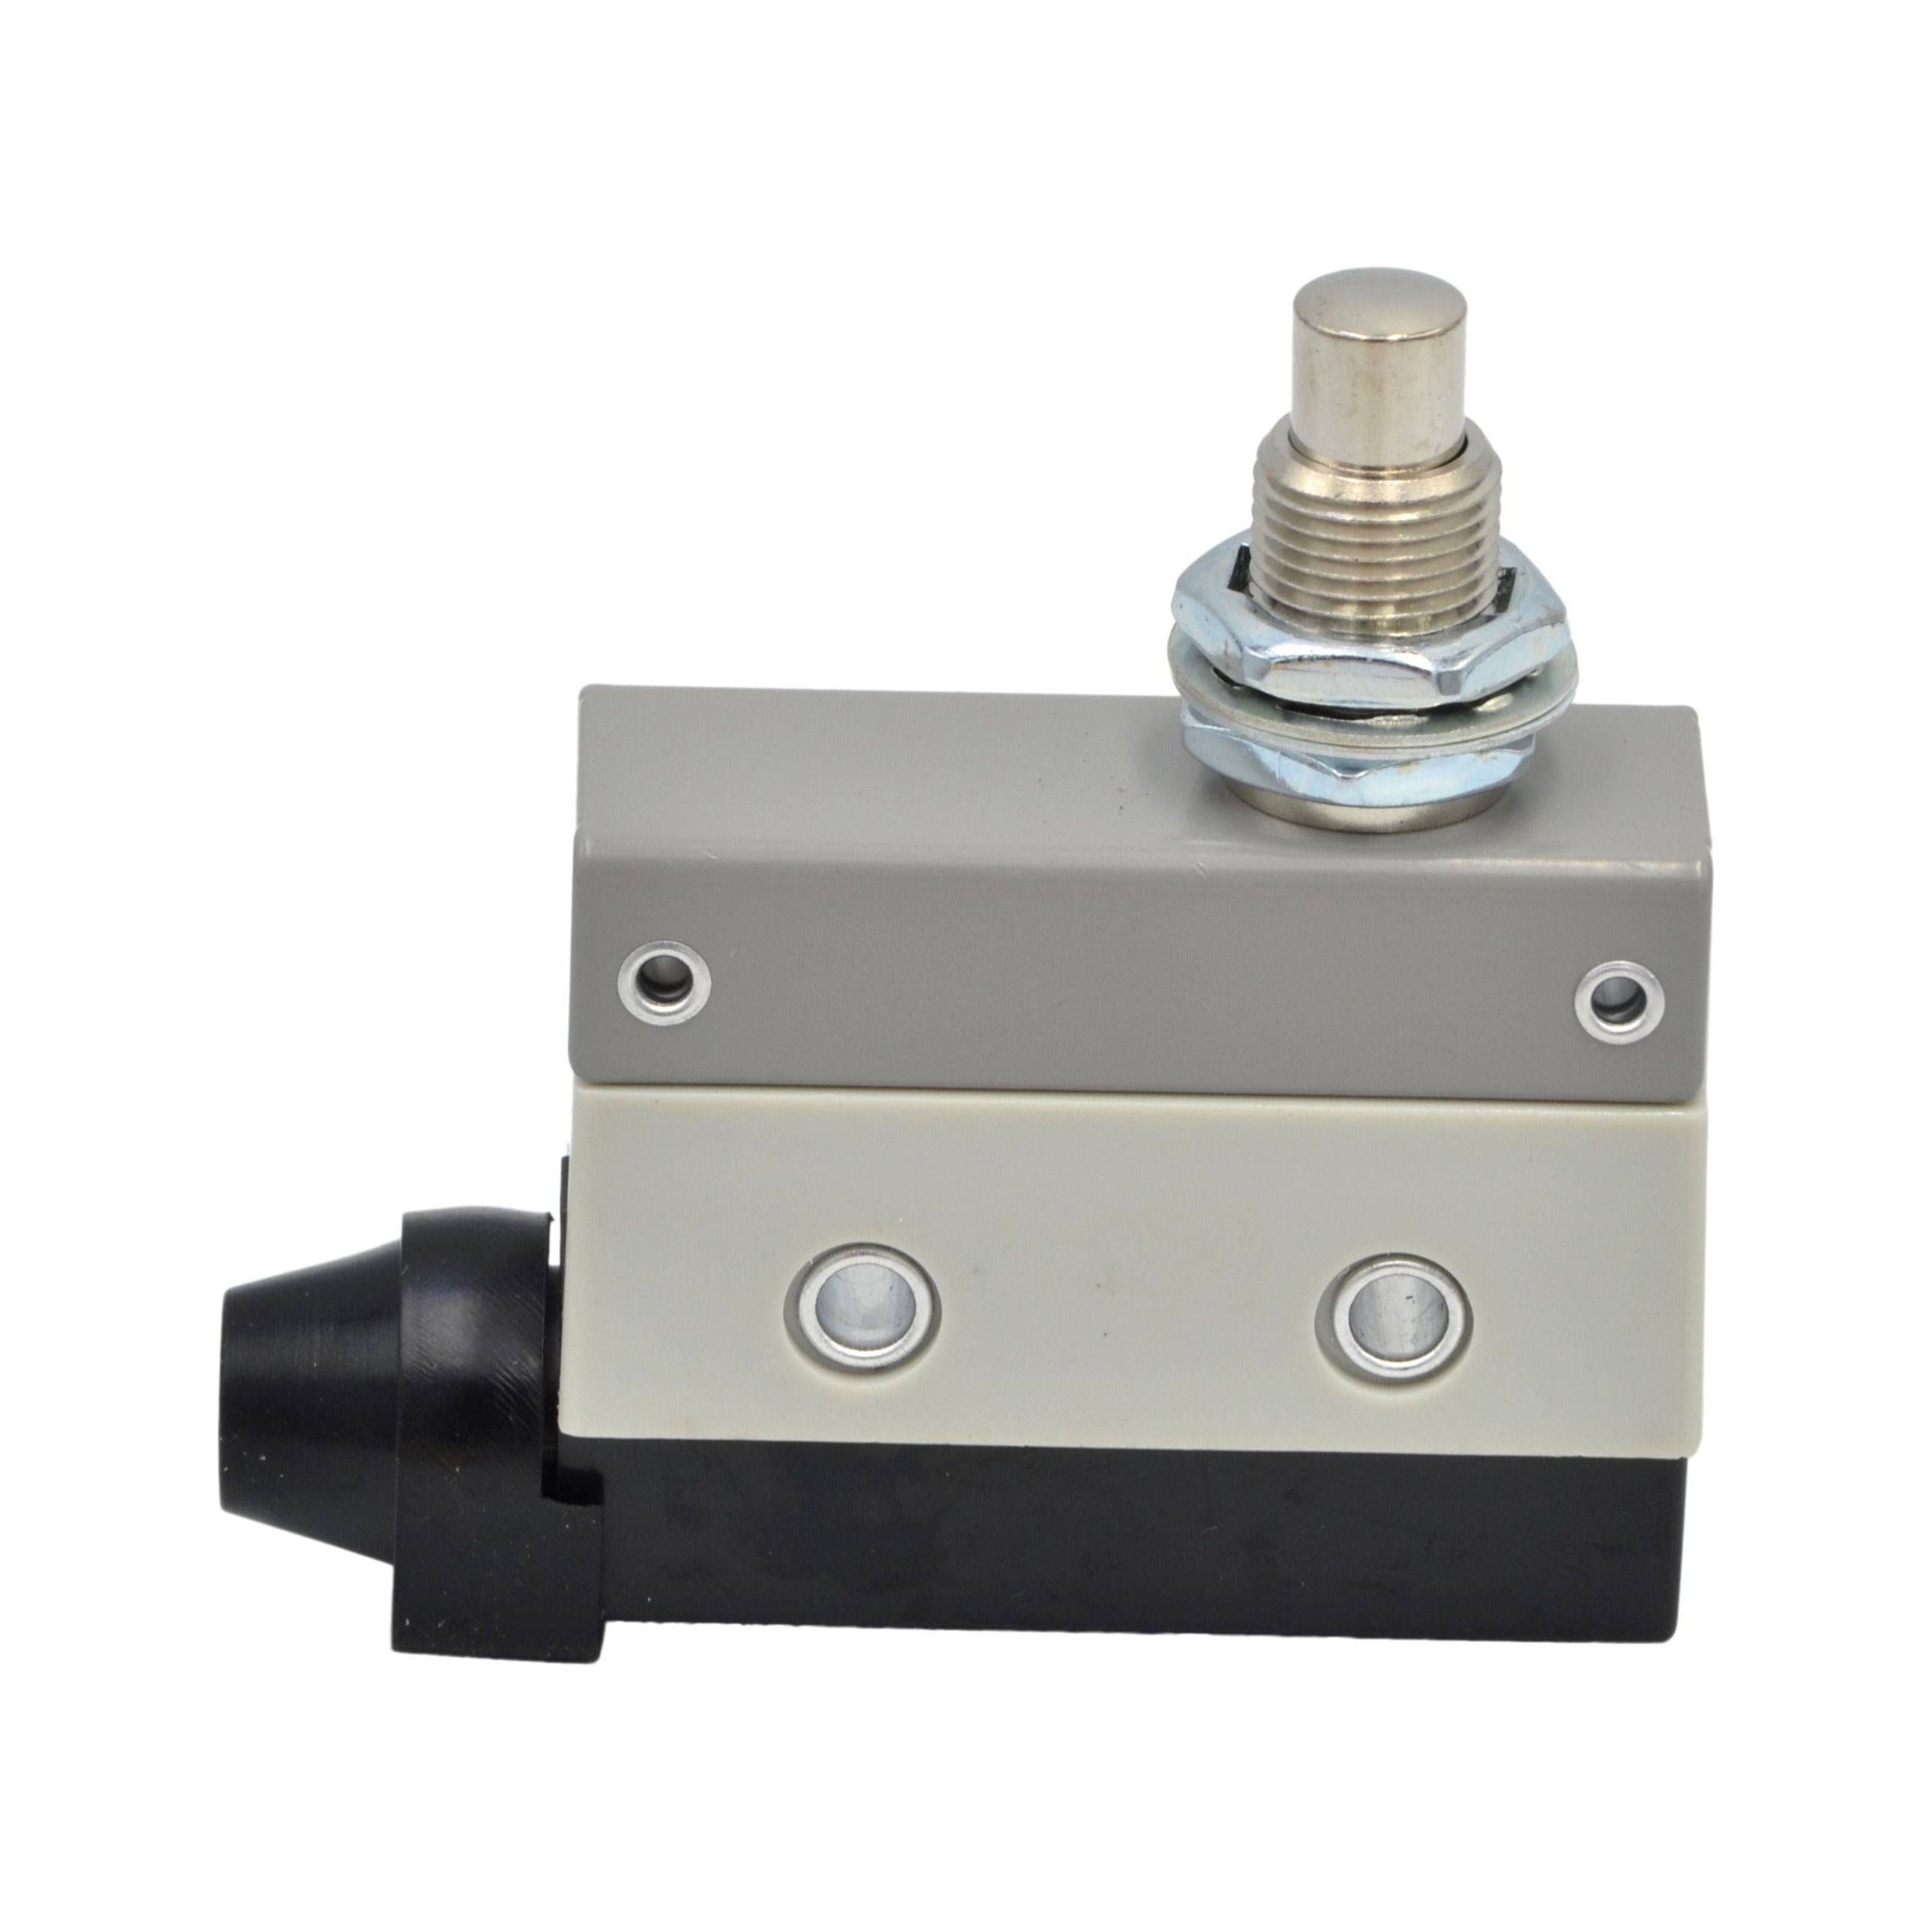 AZ-7310 Push Type, Side Mounting Limit Switch